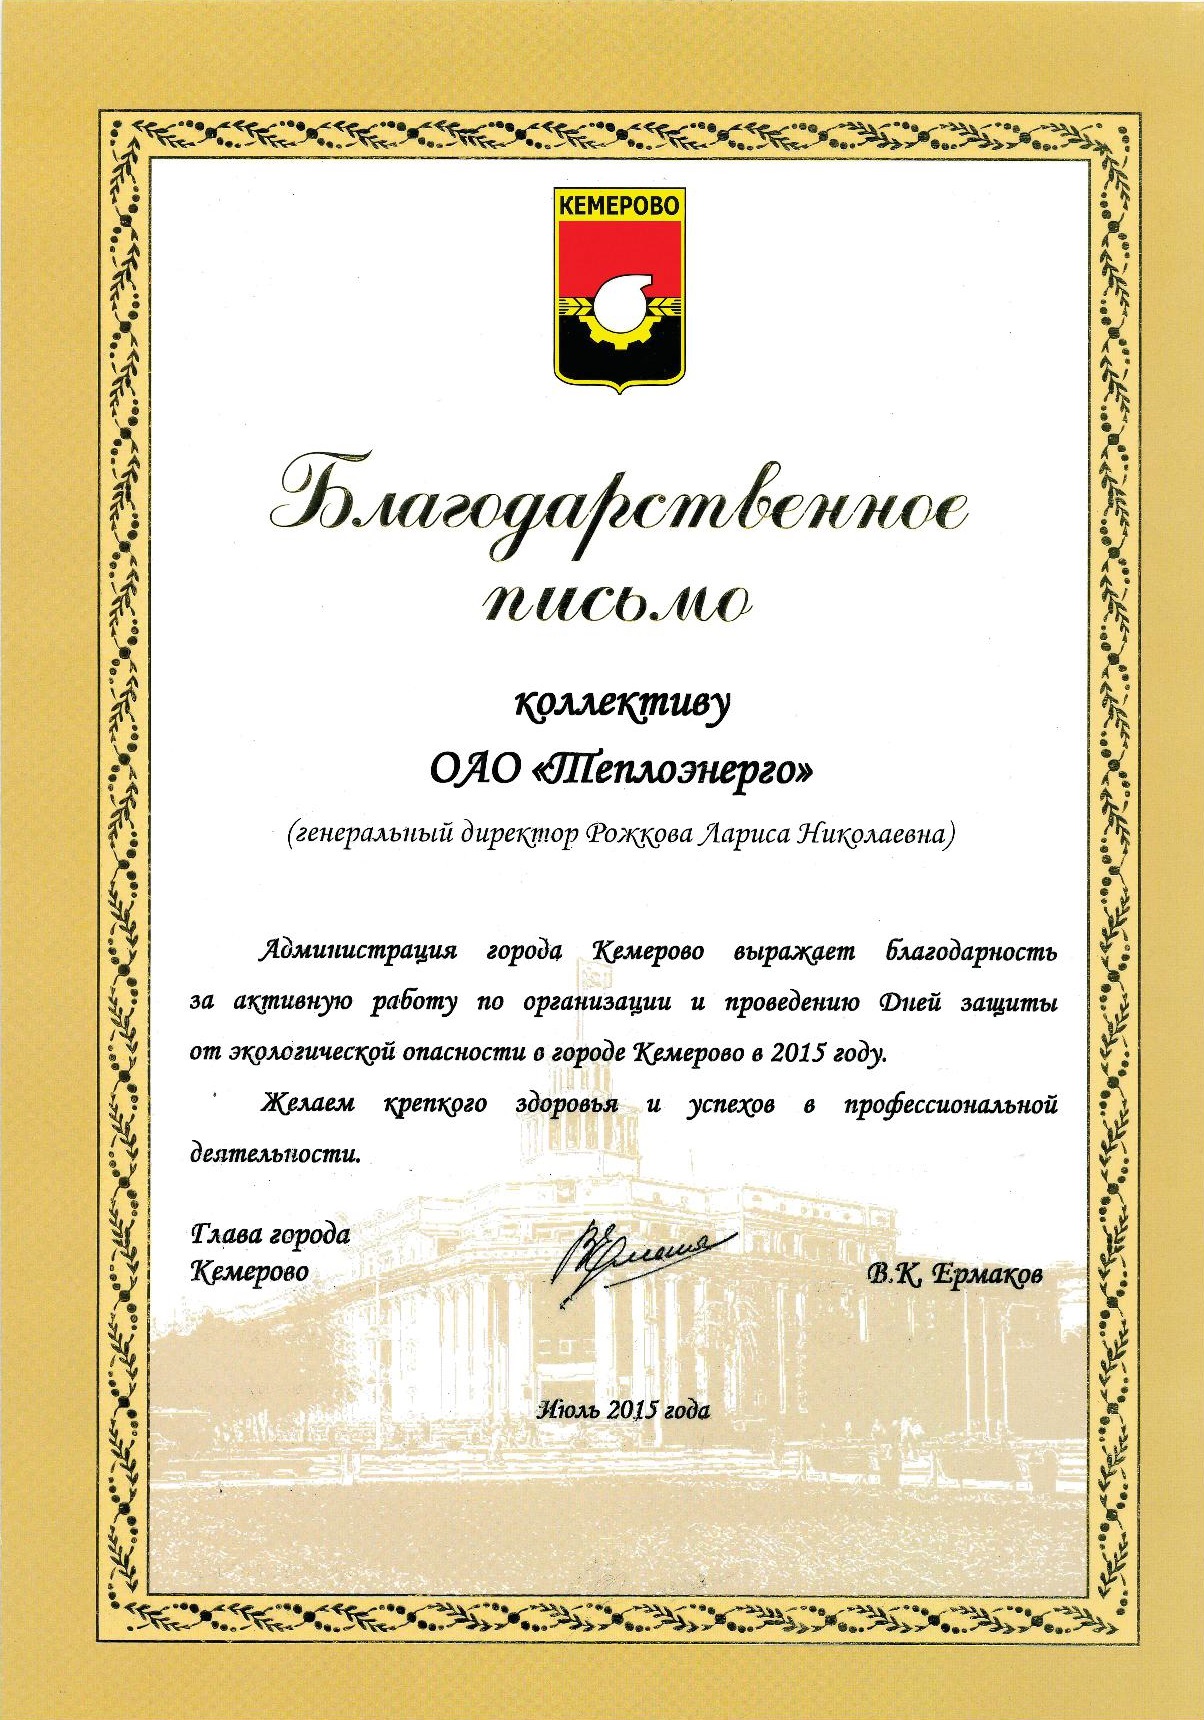 Благодарственное письмо от главы г. Кемерово, 2015 г.